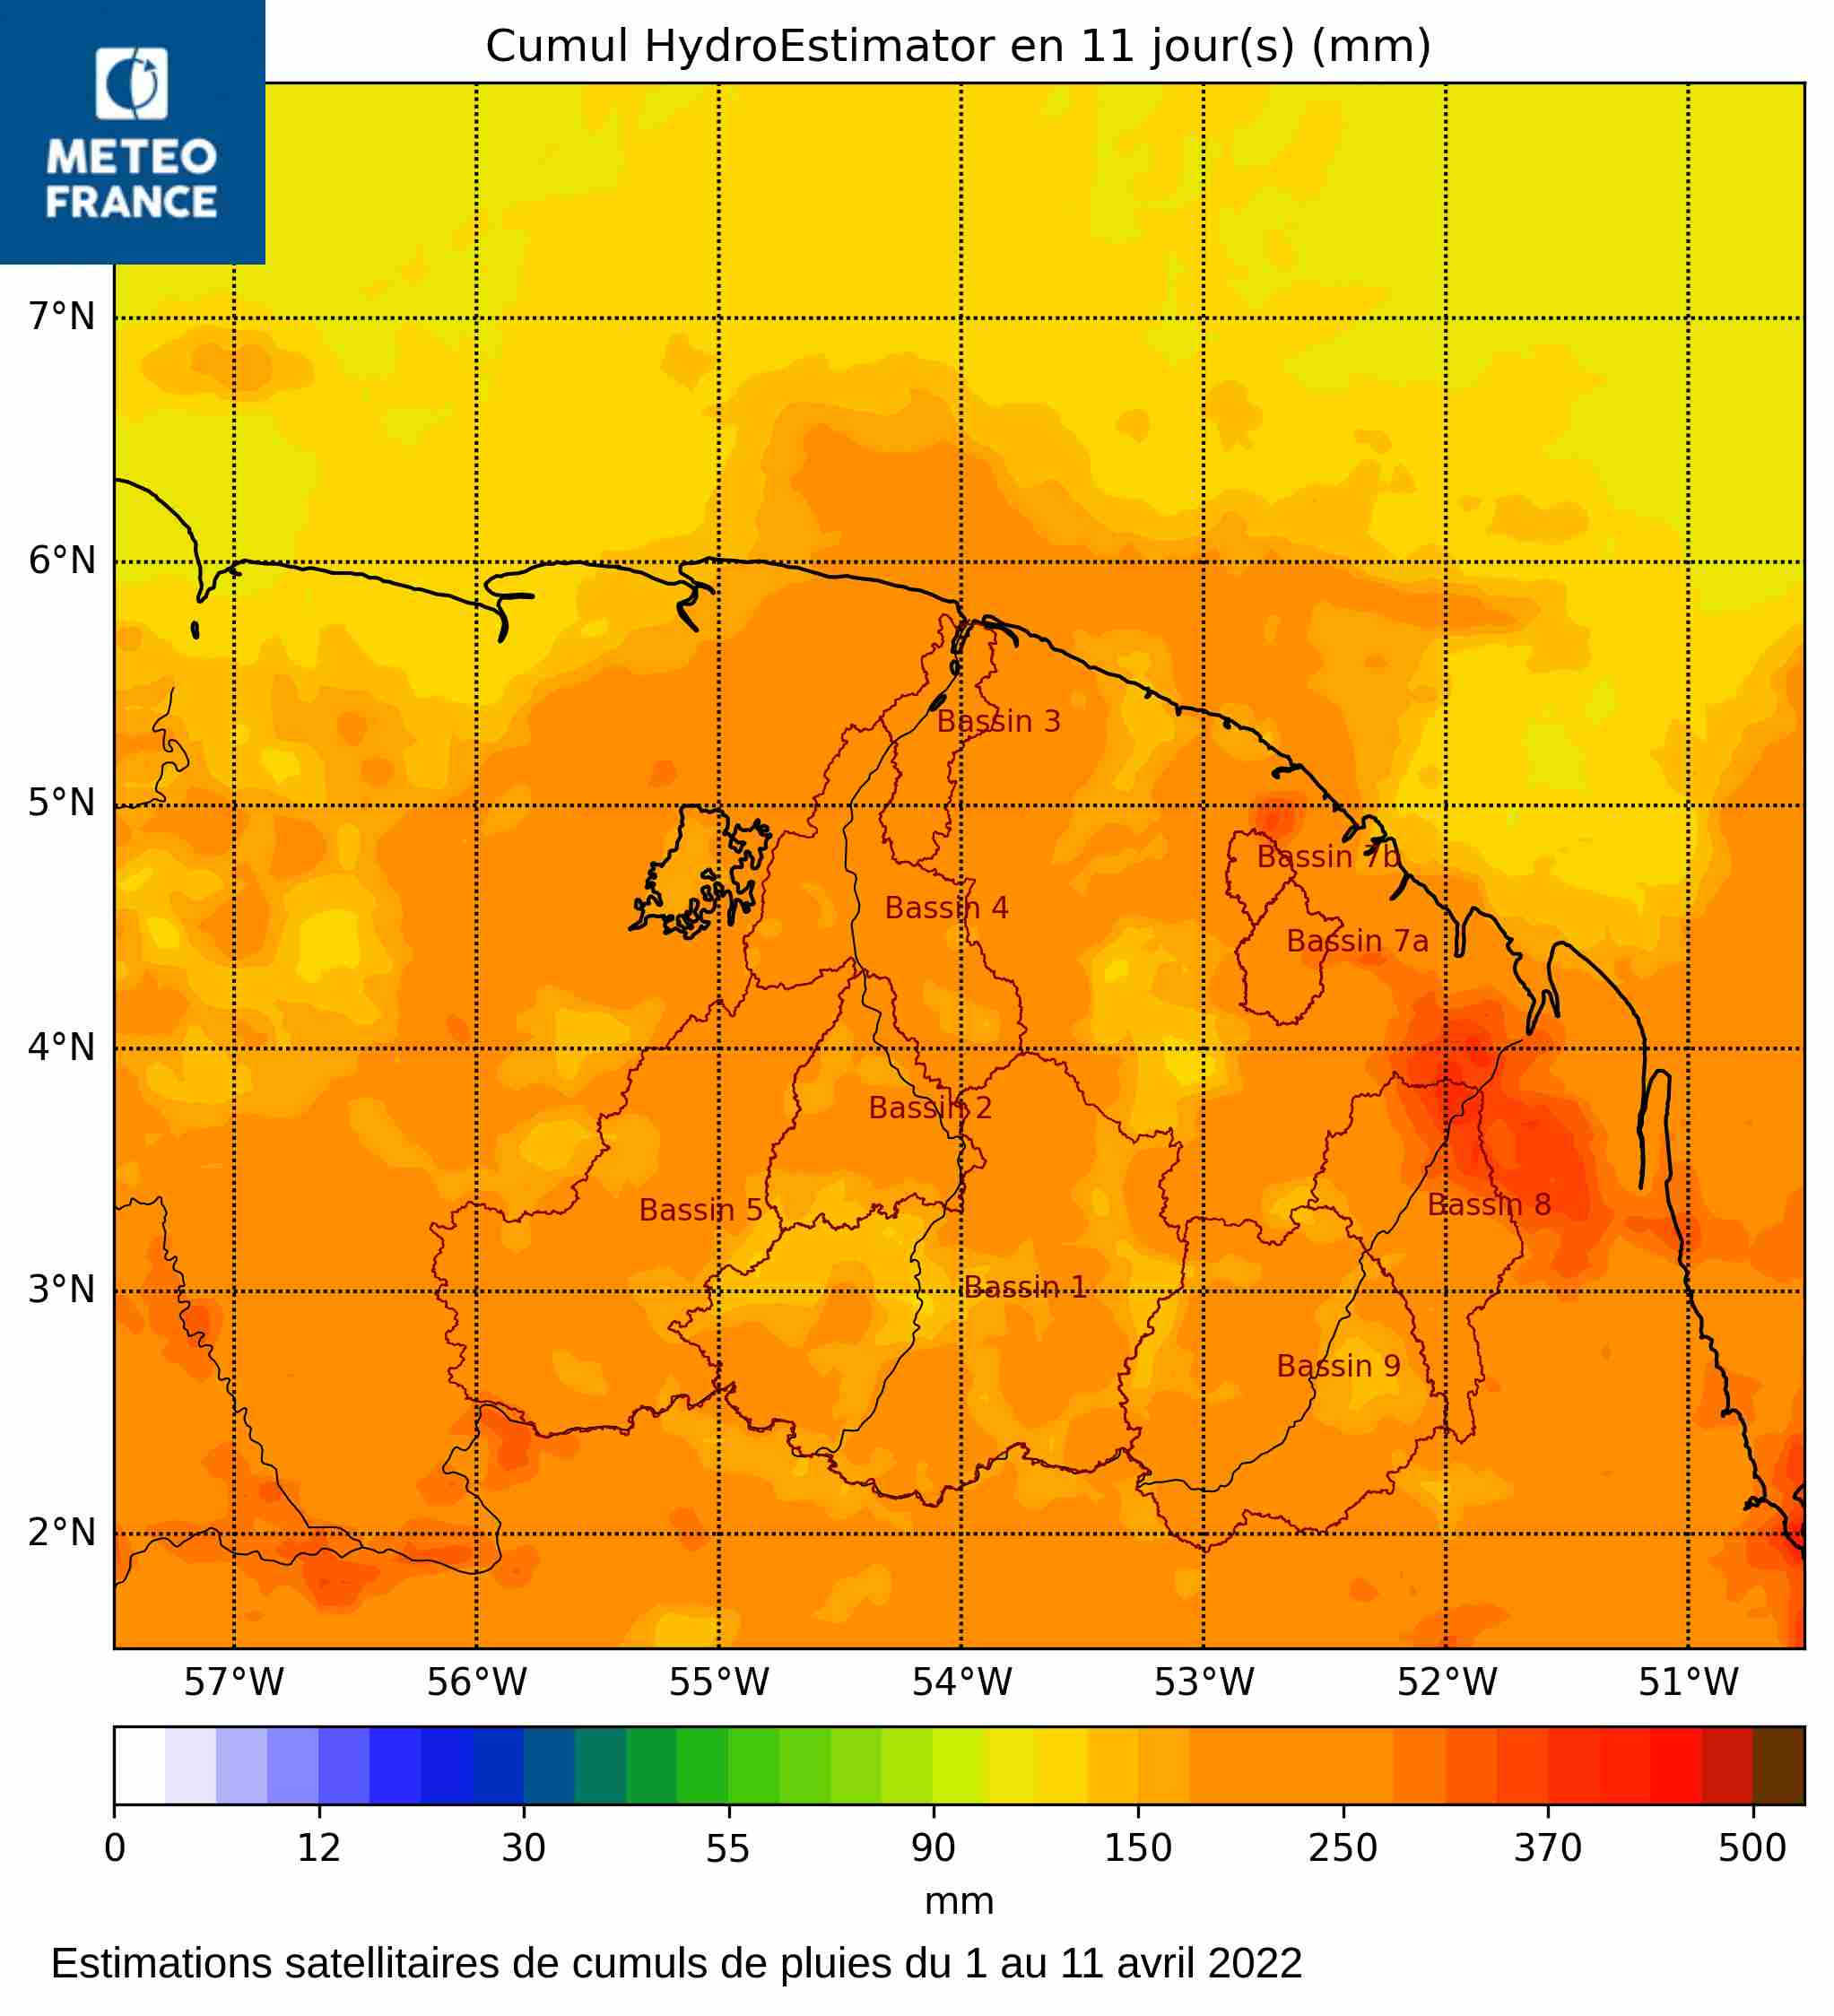 Estmations satellitaires de cumuls de pluies pour la période du 1 au 11 avril 2022